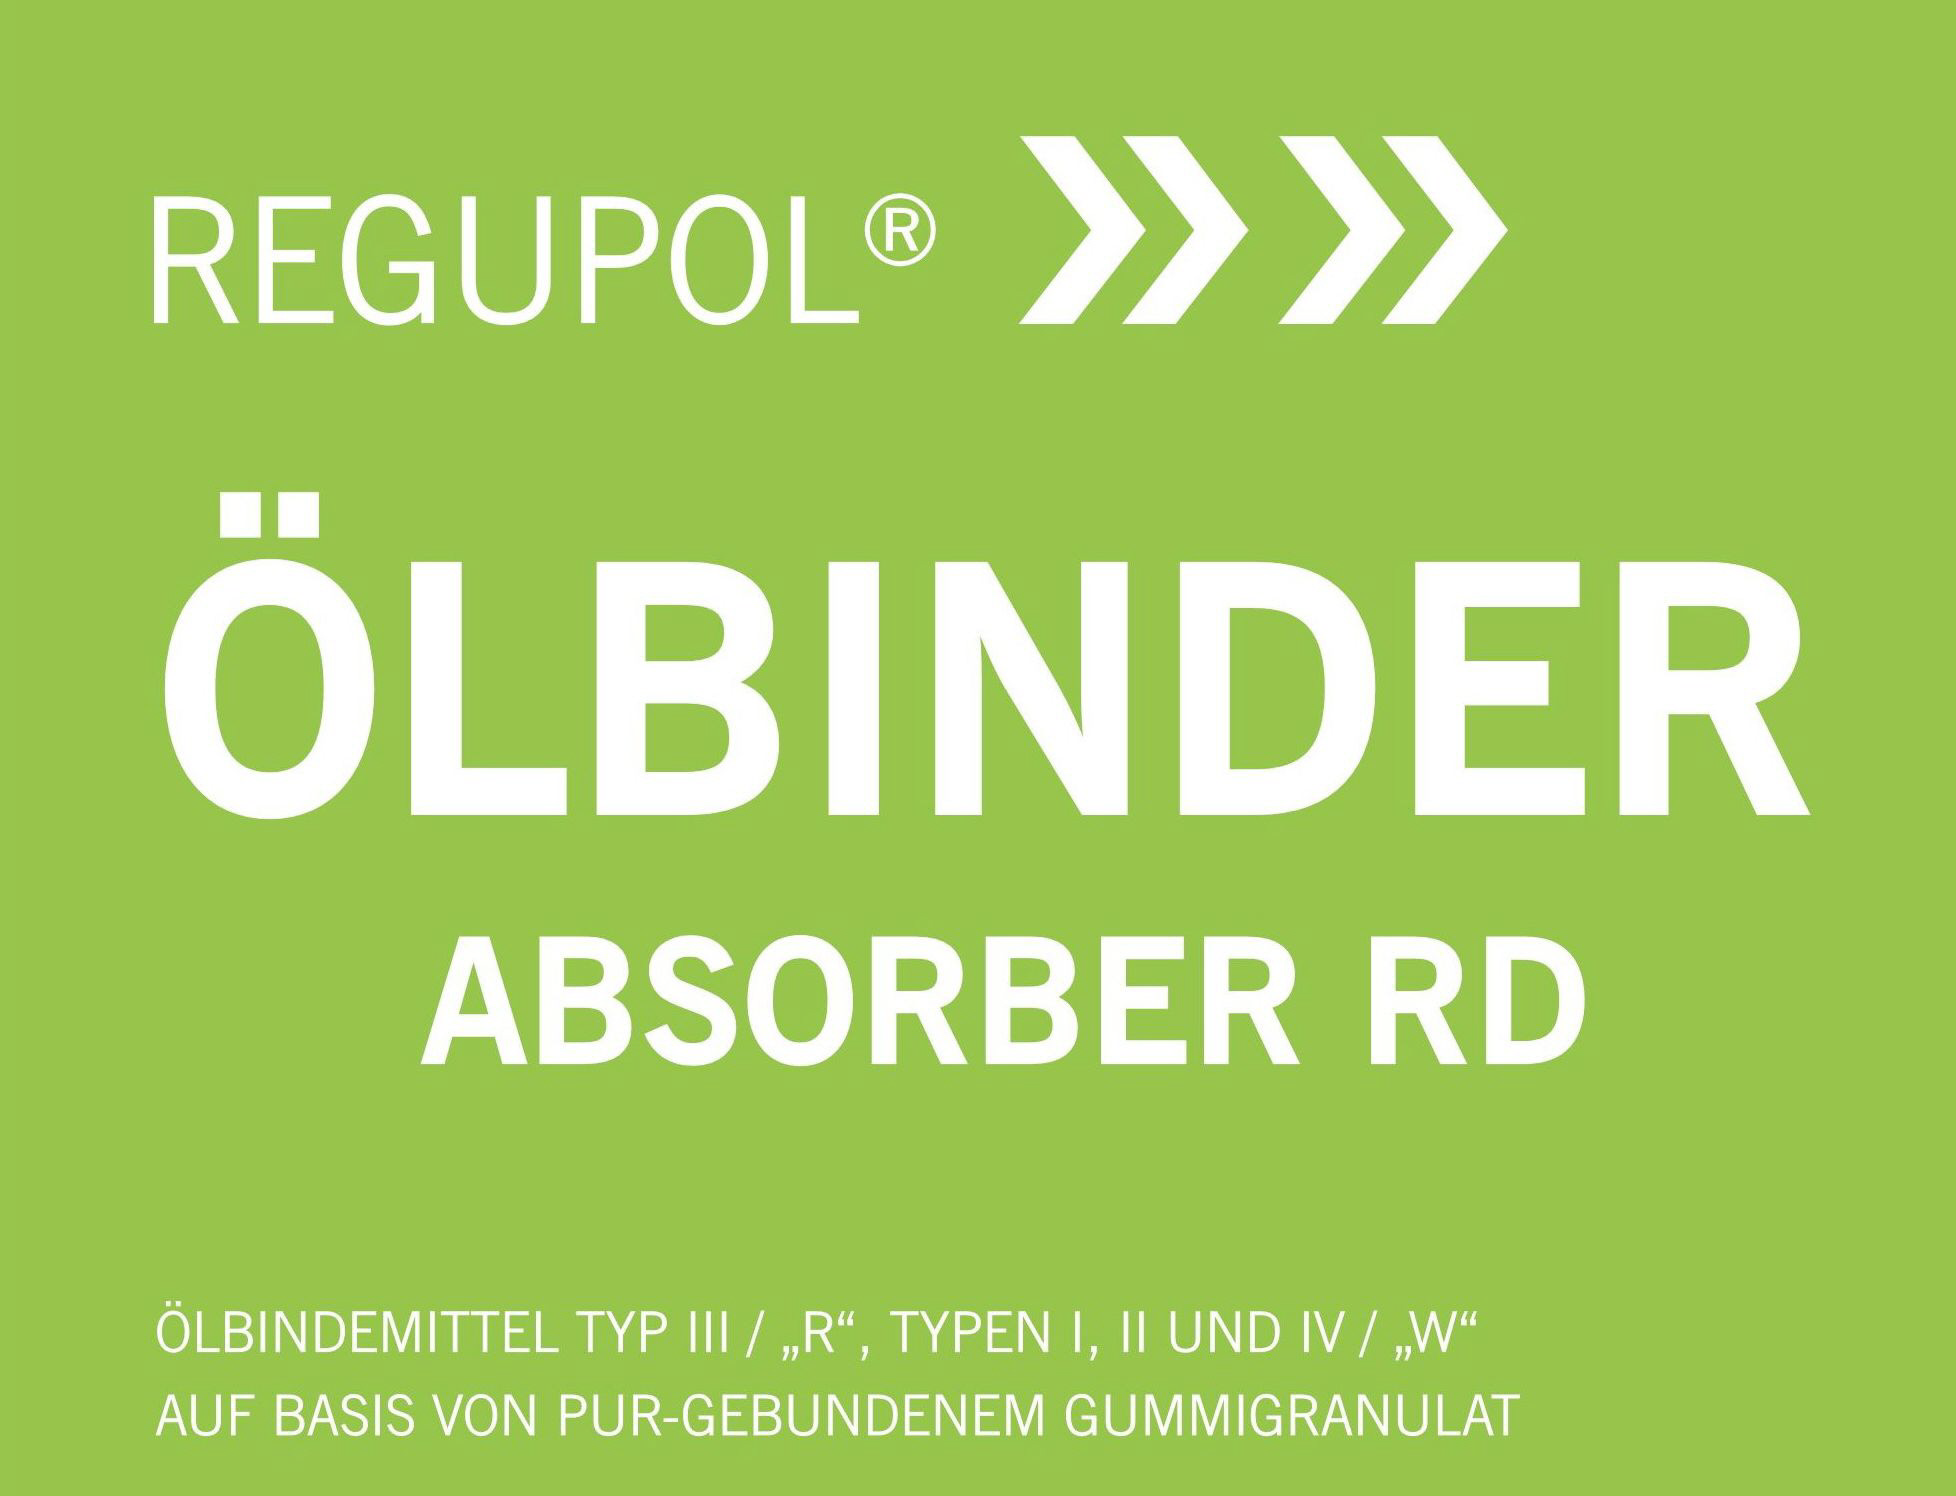 Regupol-R-absorber-RD-Vorder-aude_1